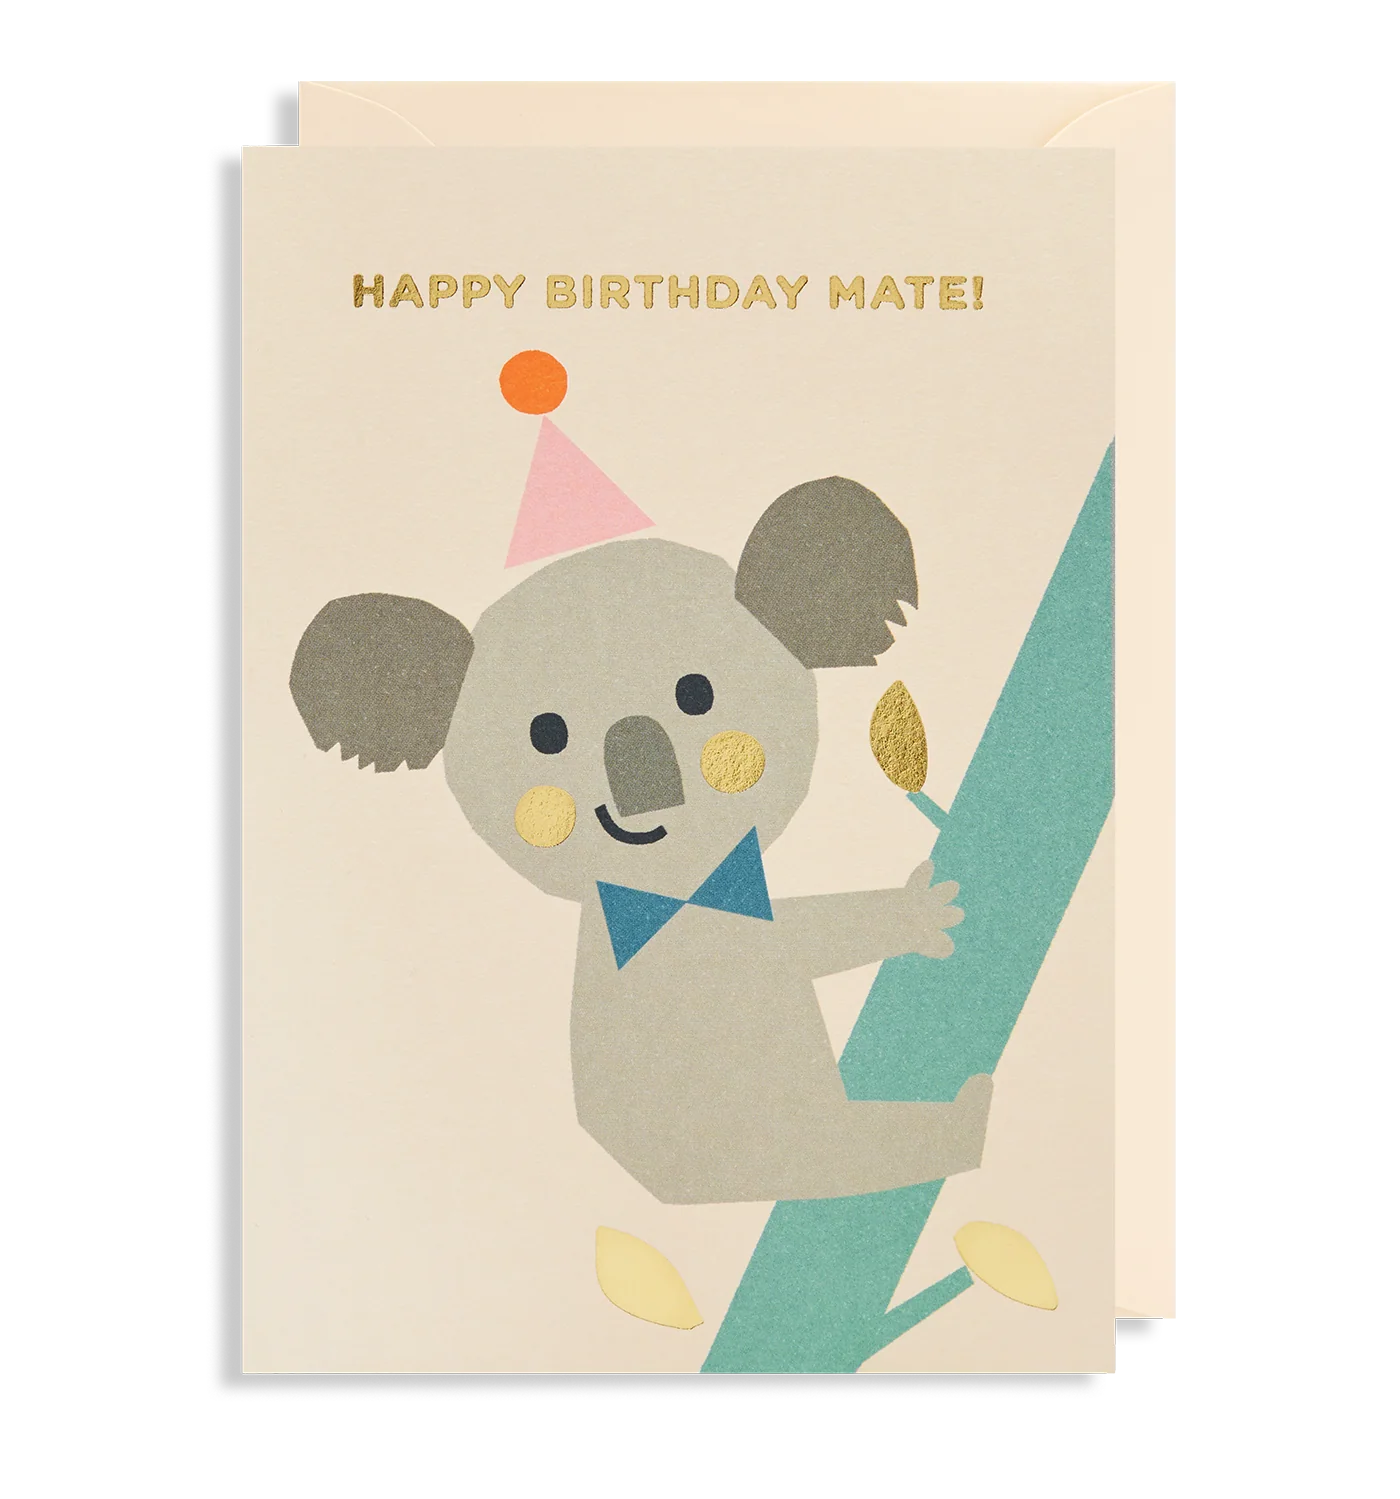 Happy Birthday Mate! Party Koala Birthday Card by Ekaterina Trukhan